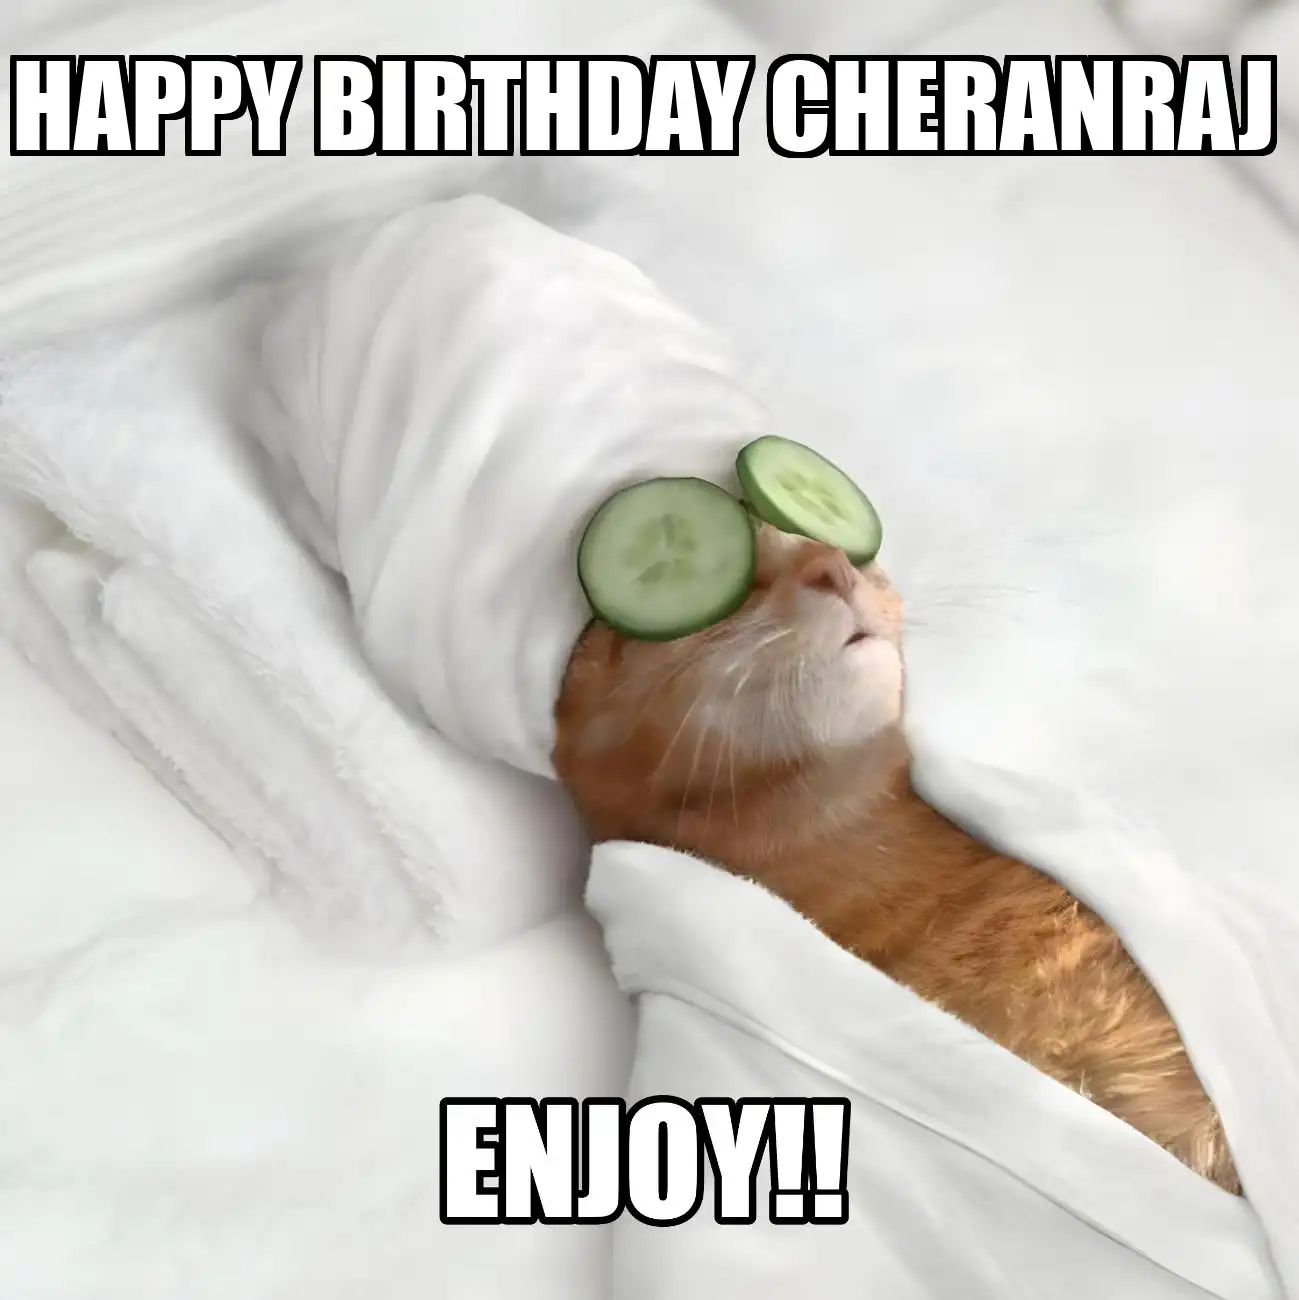 Happy Birthday Cheranraj Enjoy Cat Meme